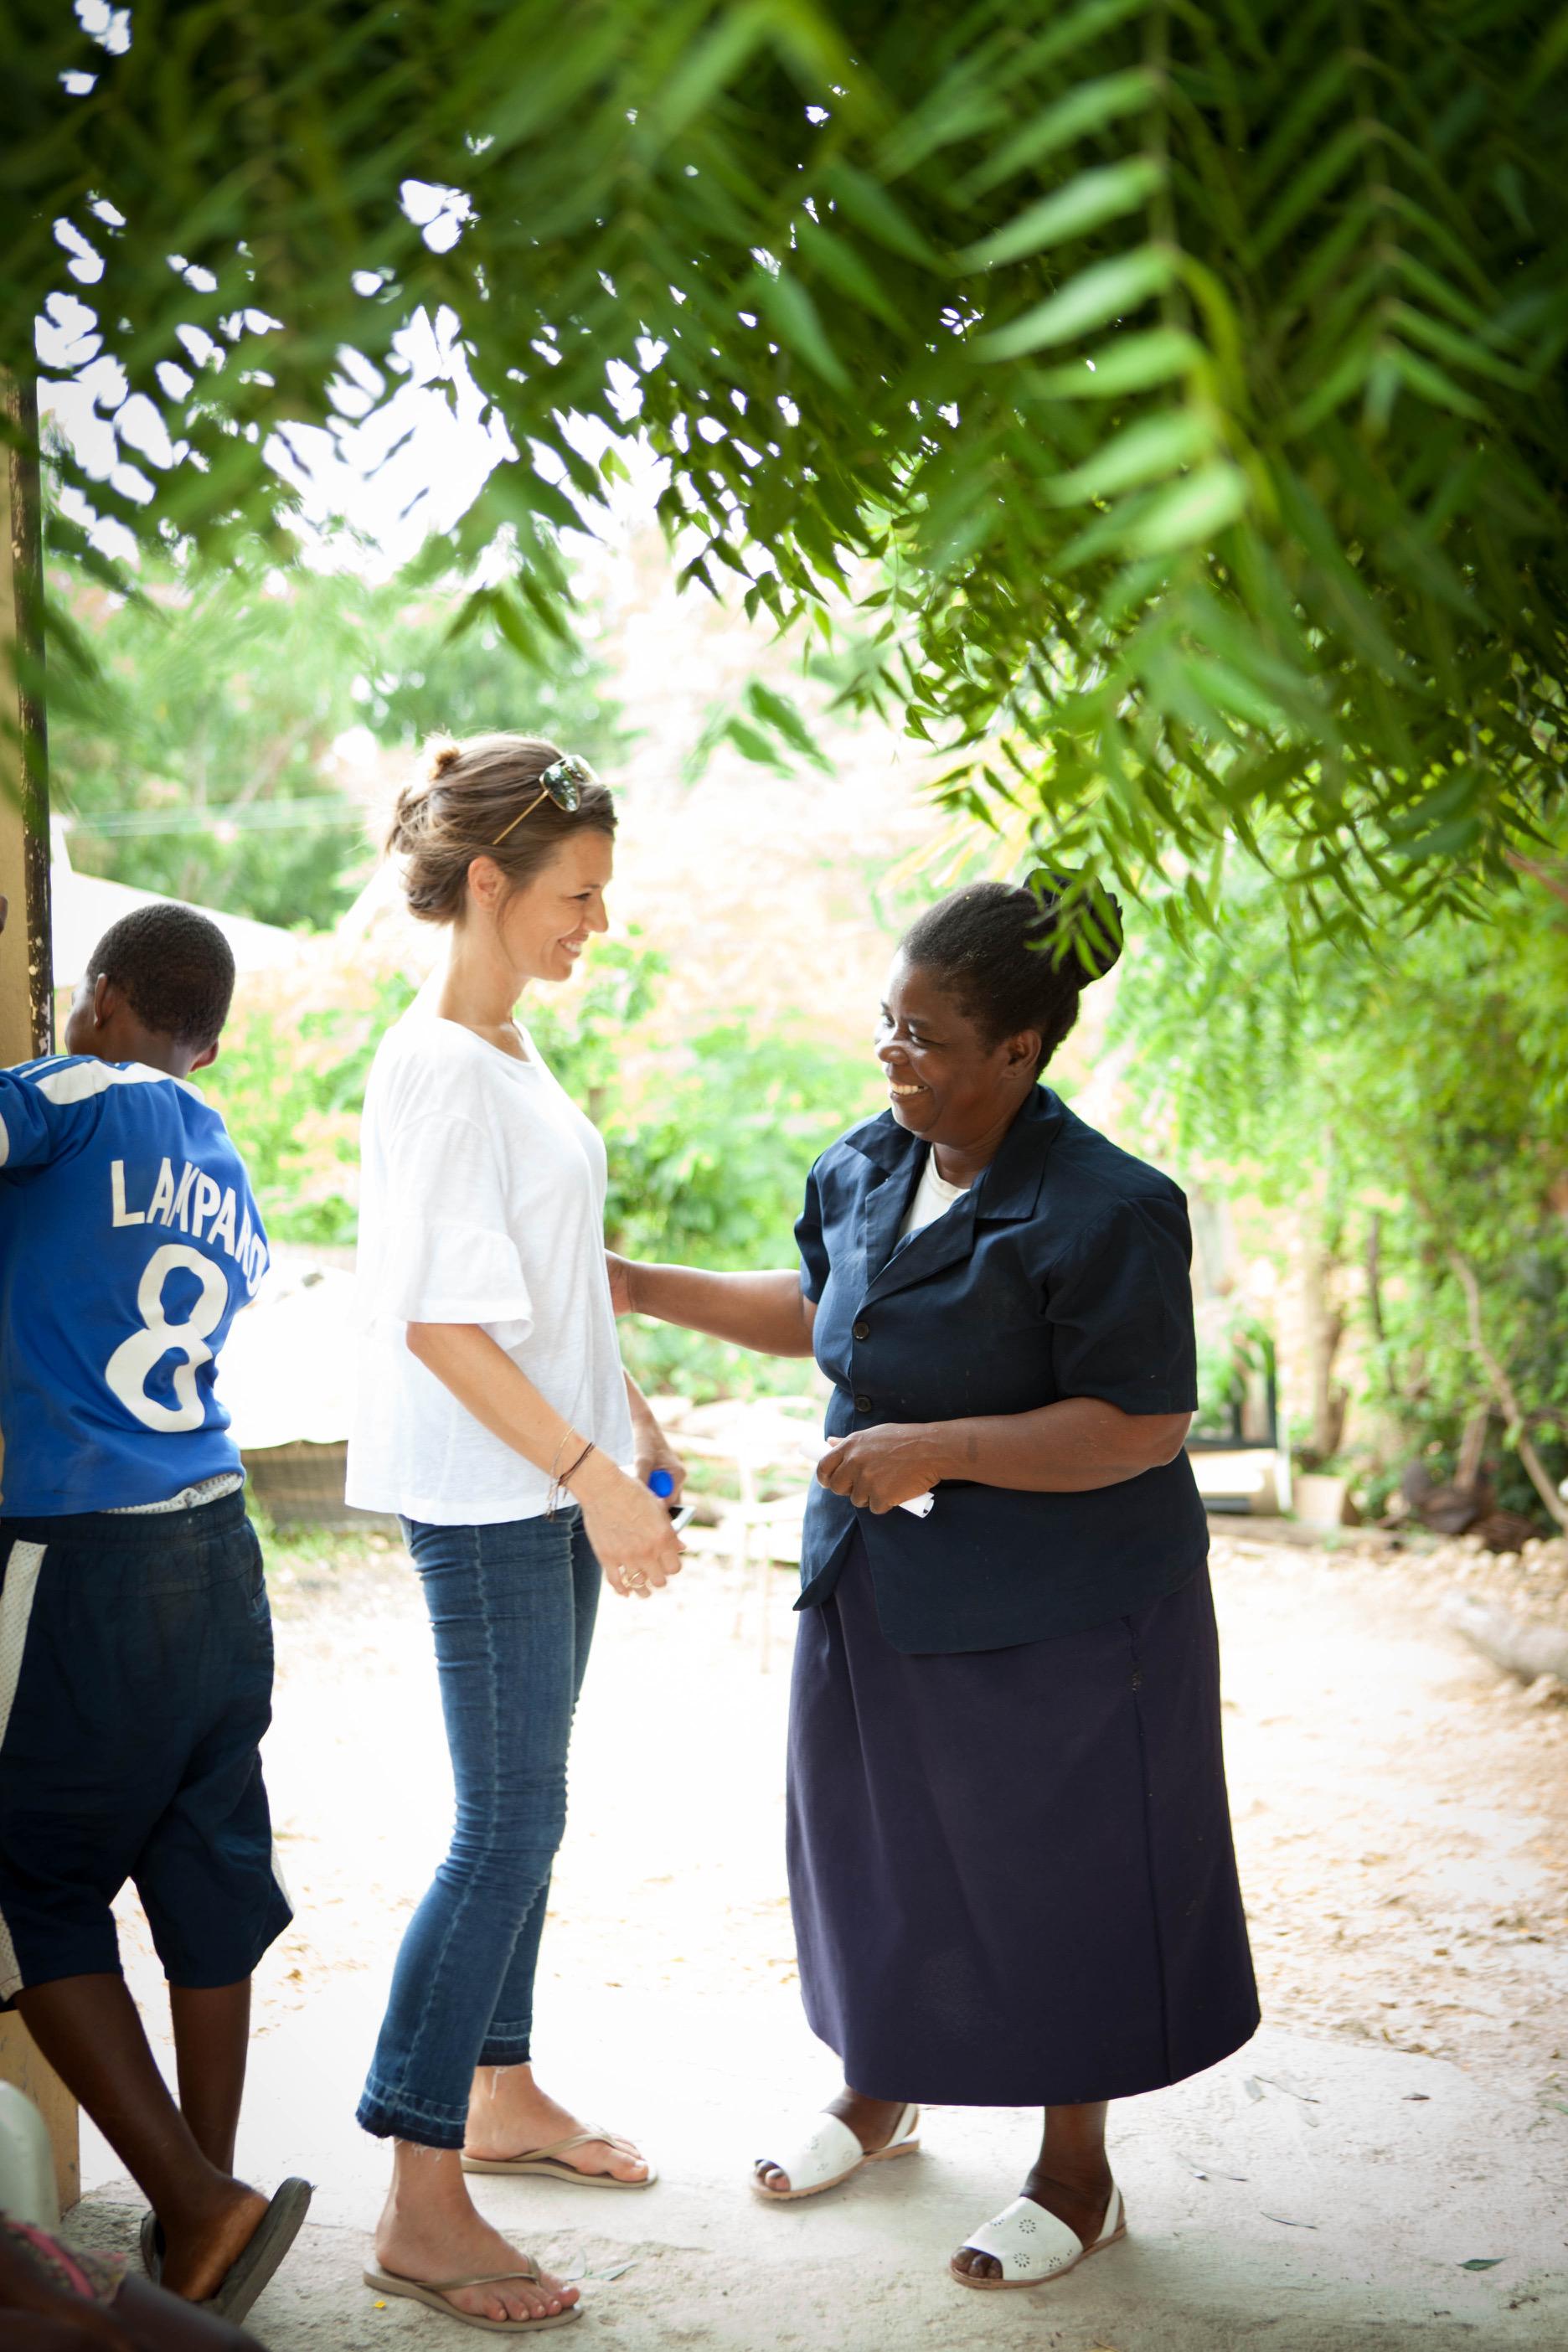 Ebba och Ysabel, rektor och lärare på den första skolan som ”Together för better” byggde.